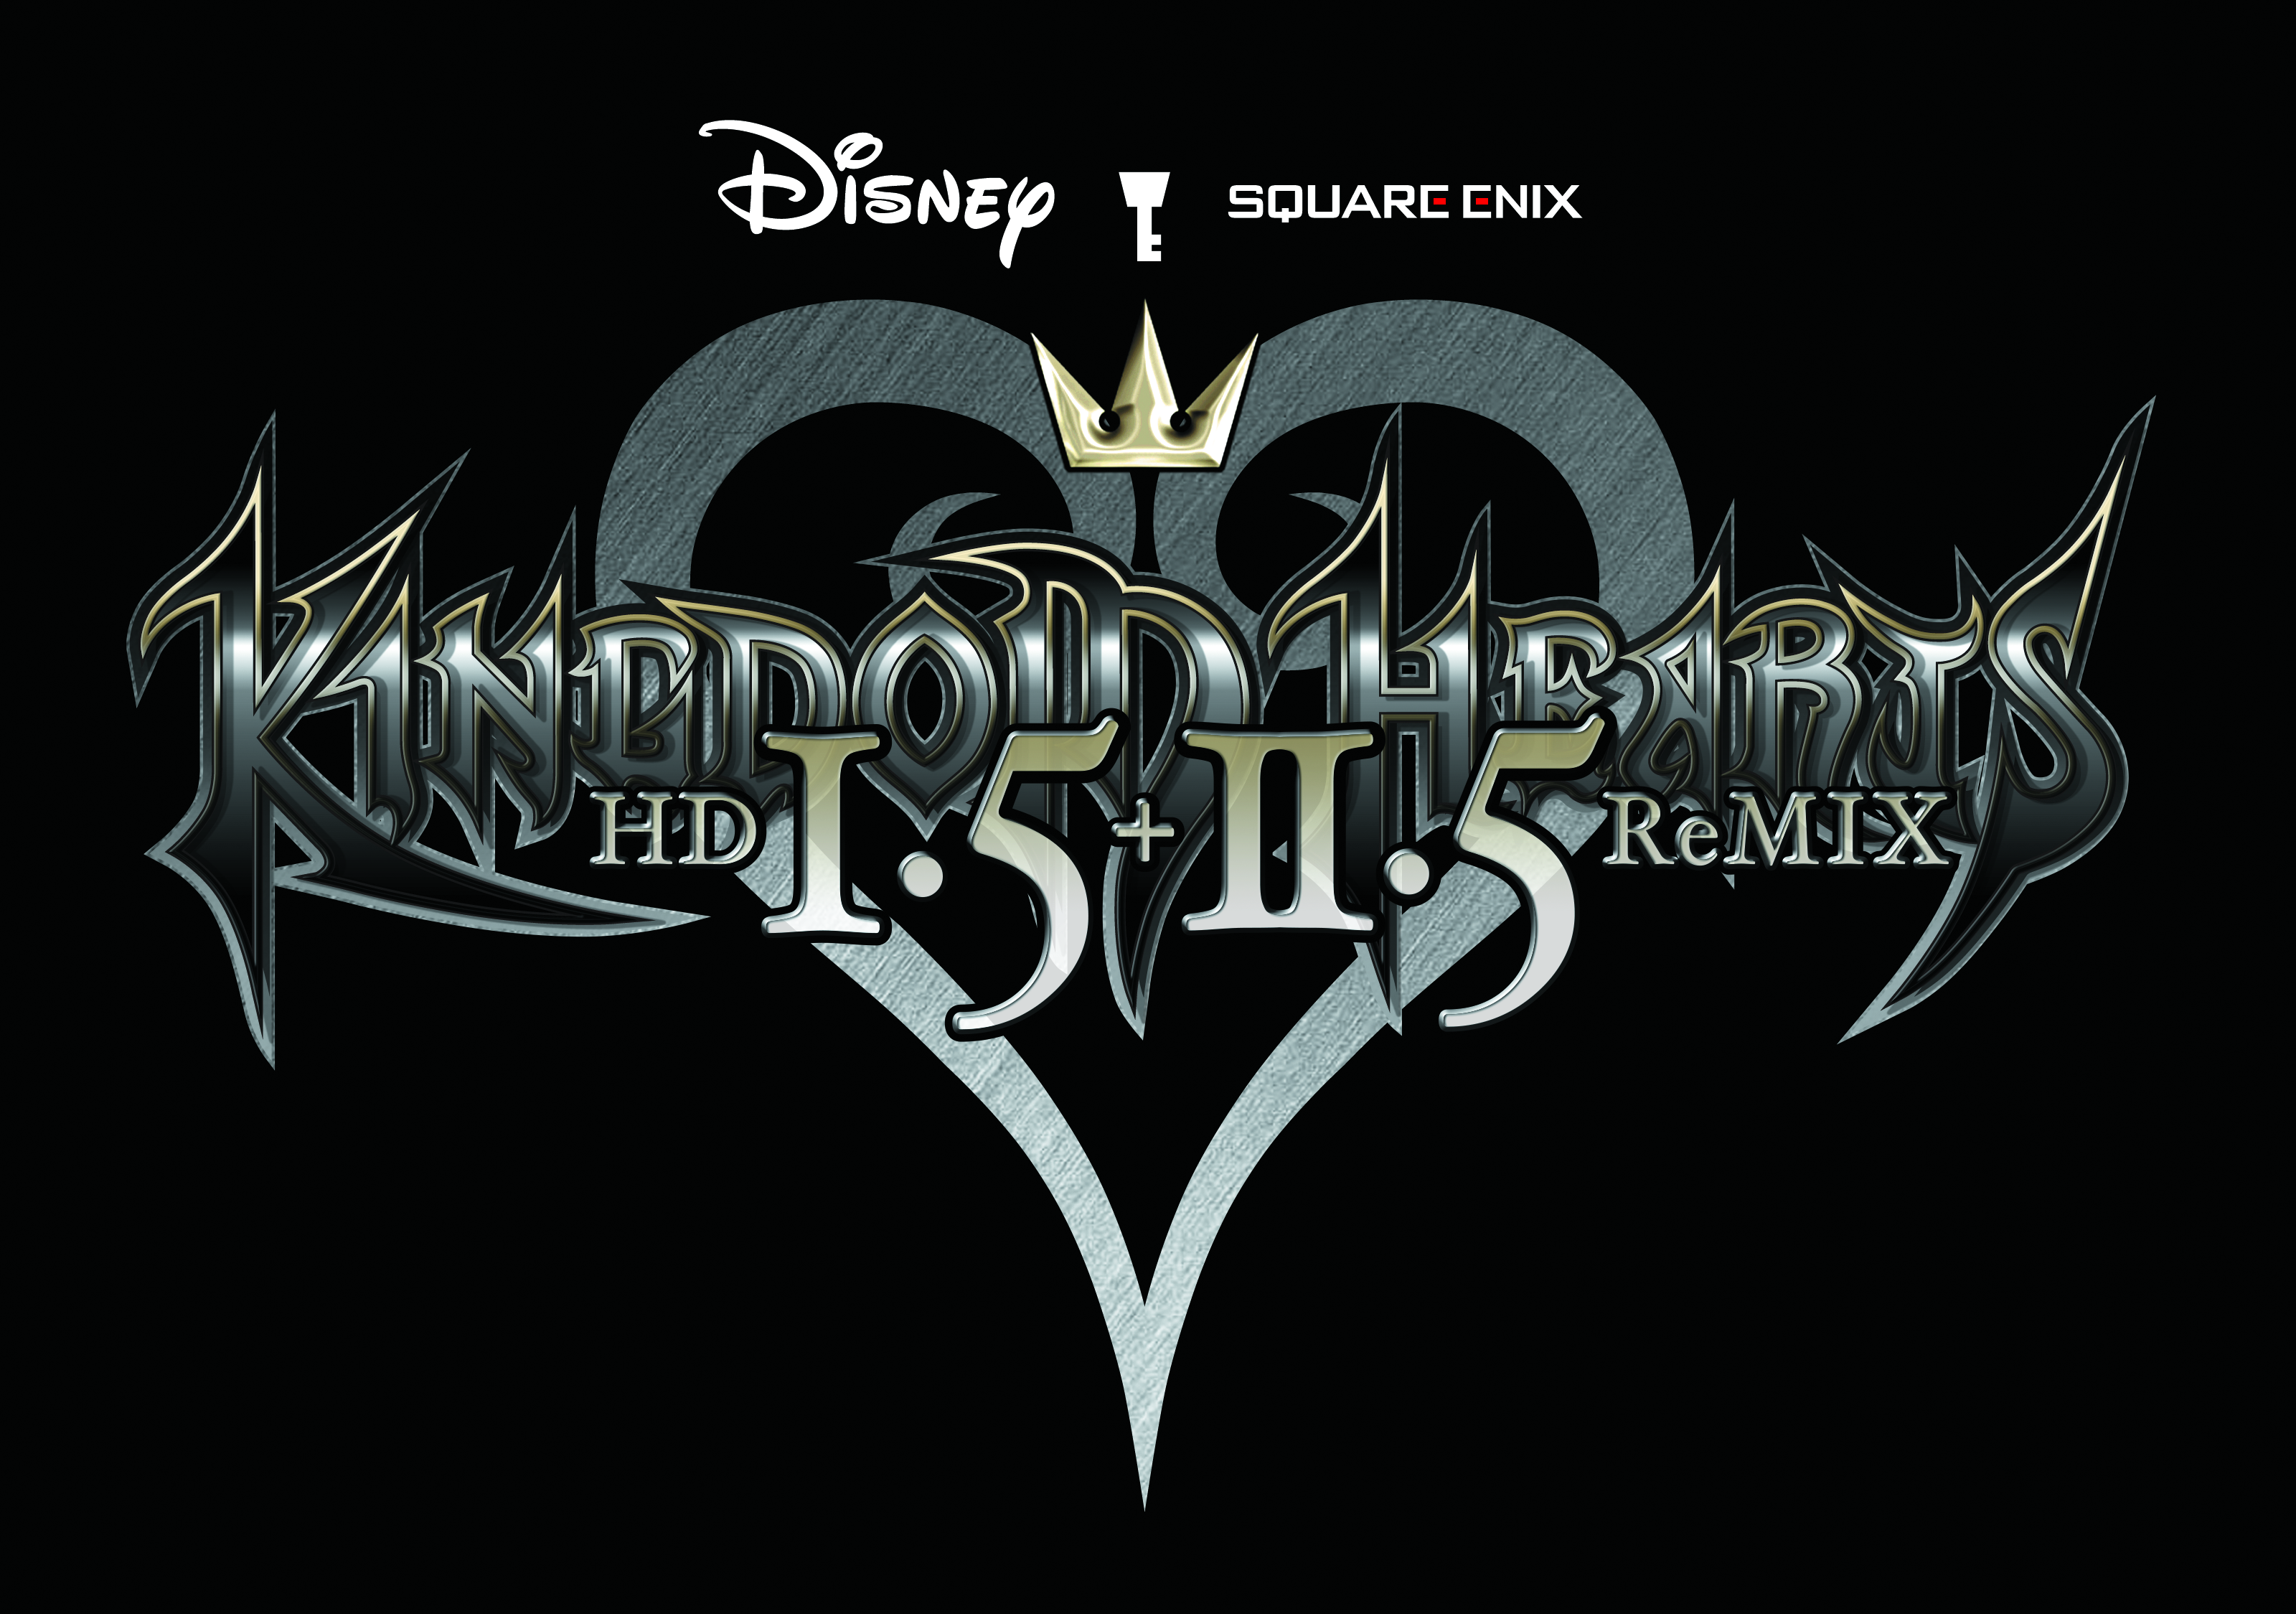 KINGDOM HEARTS HD 1.5+2.5 ReMIX